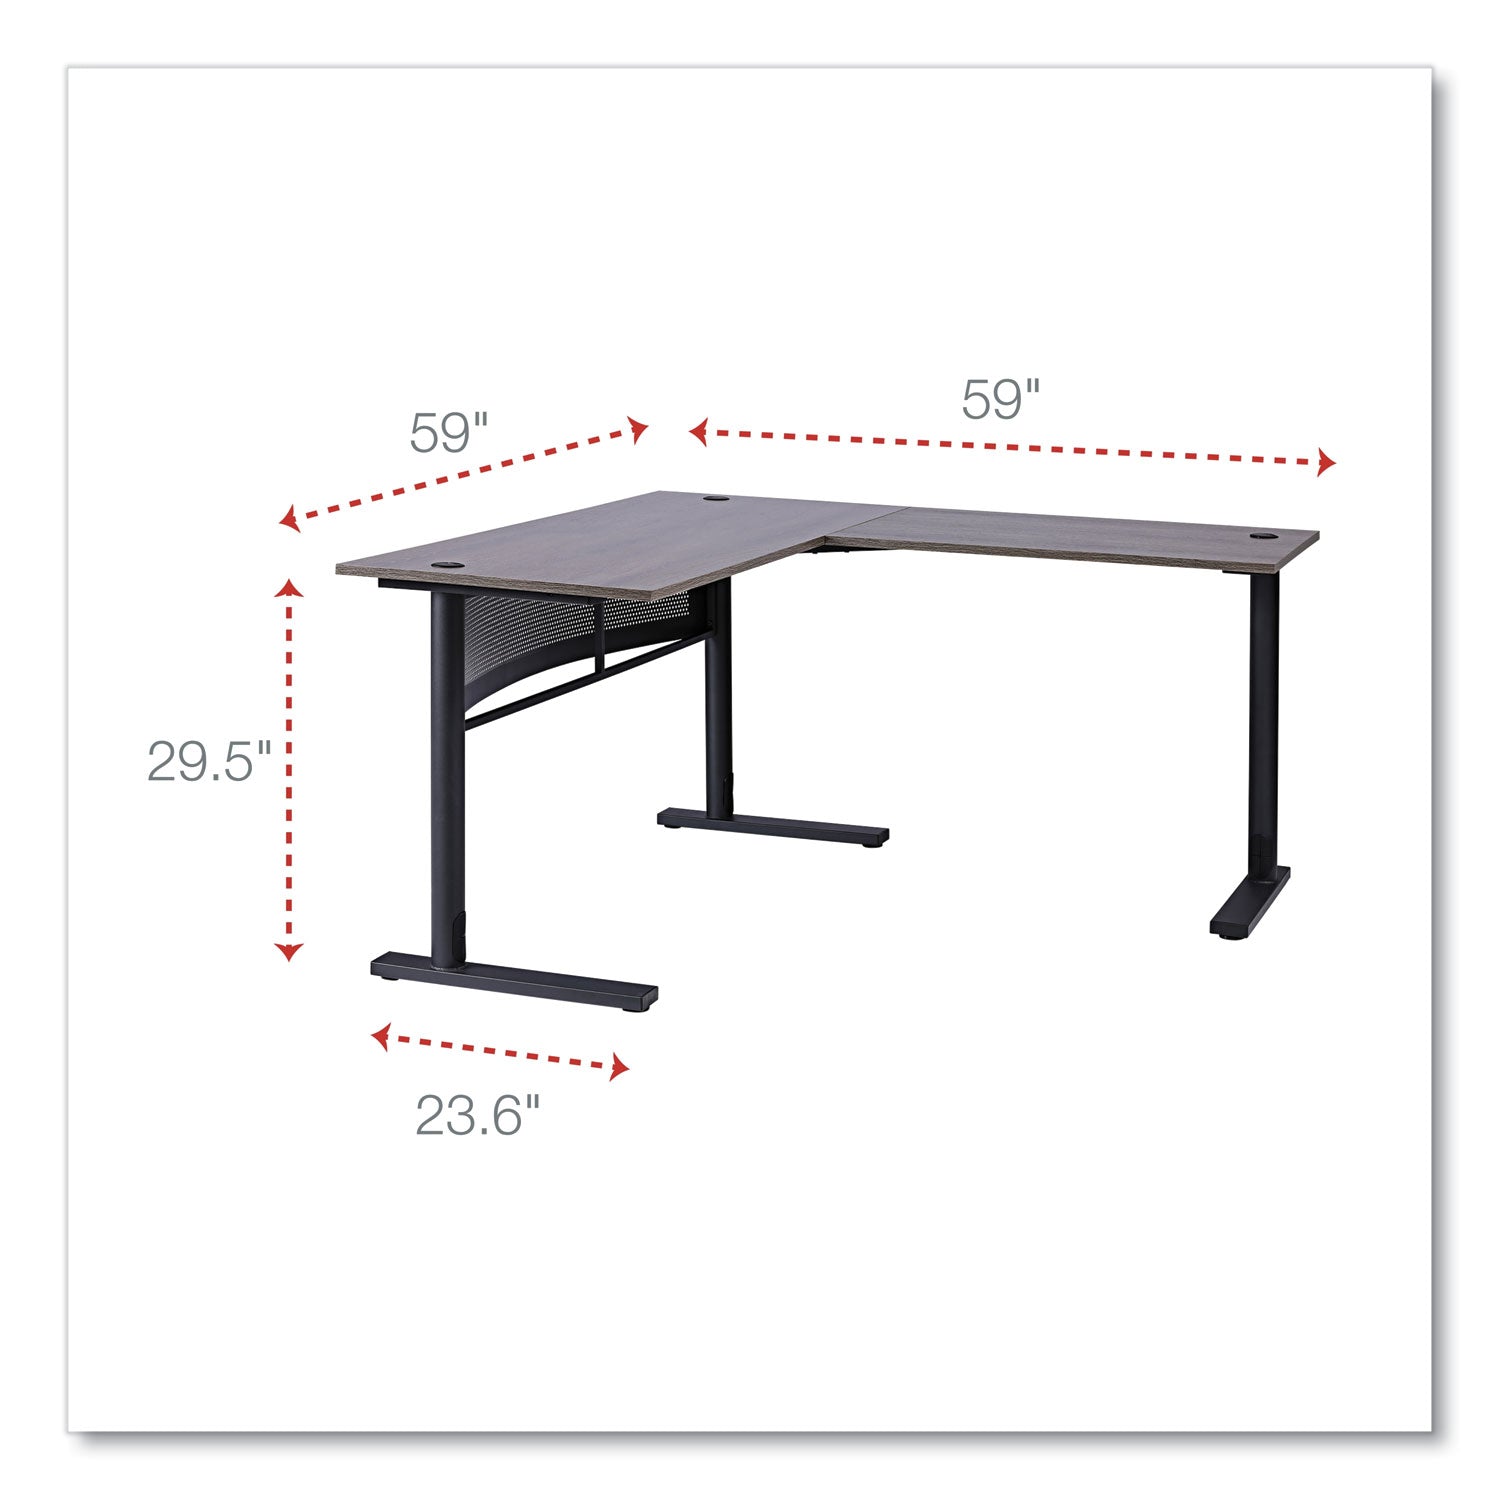 l-shaped-writing-desk-5905-x-5905-x-2953-gray-black_alewsl5959gb - 2